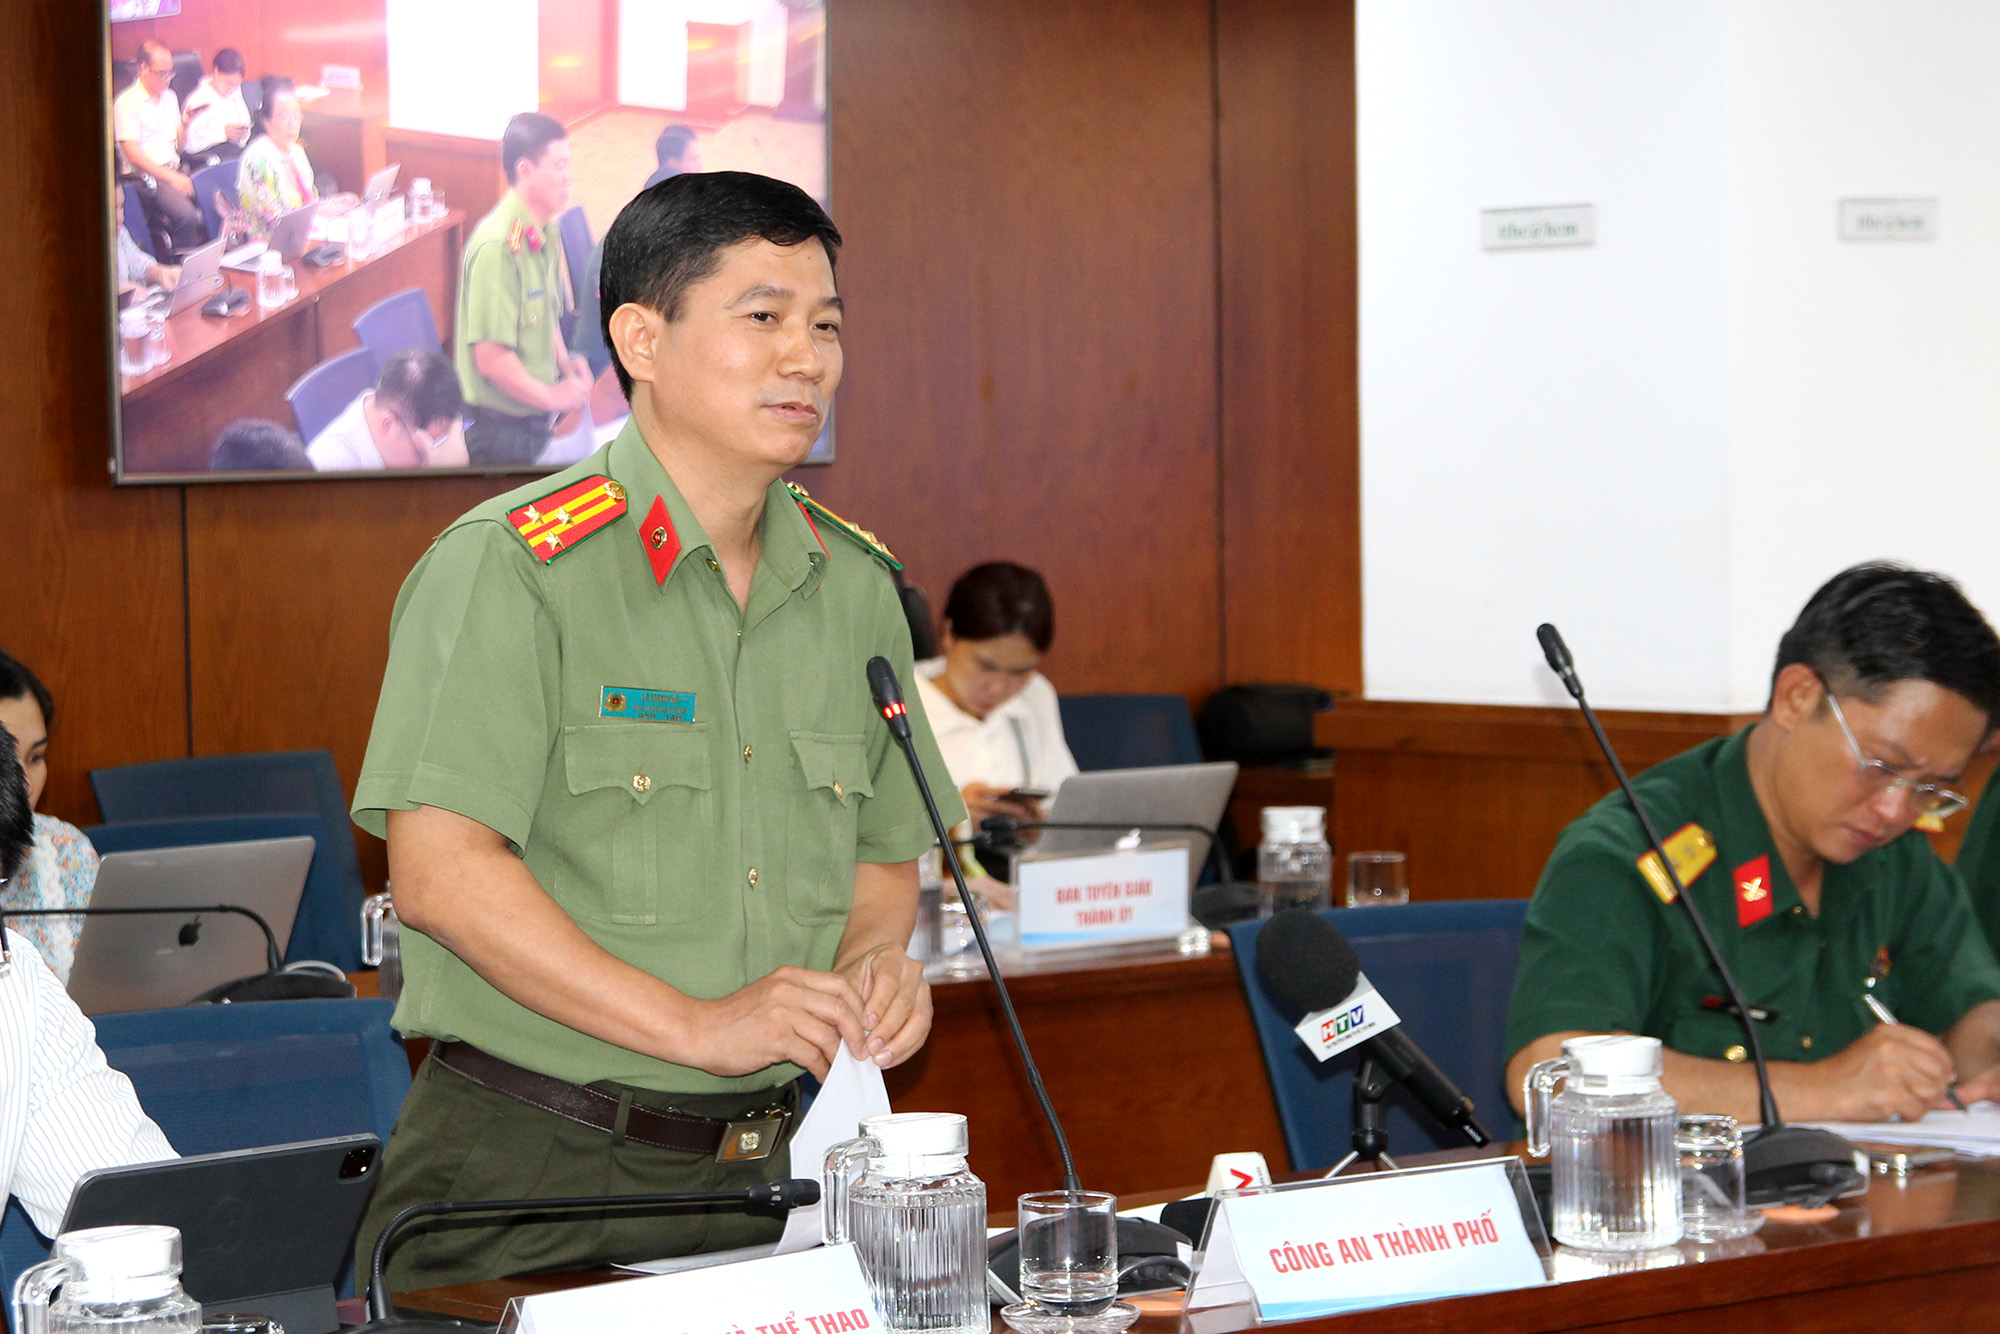 Thượng tá Lê Mạnh Hà - Phó trưởng Phòng Tham mưu, Công an TP. Hồ chí Minh tại buổi họp báo (Ảnh: H.Hào).